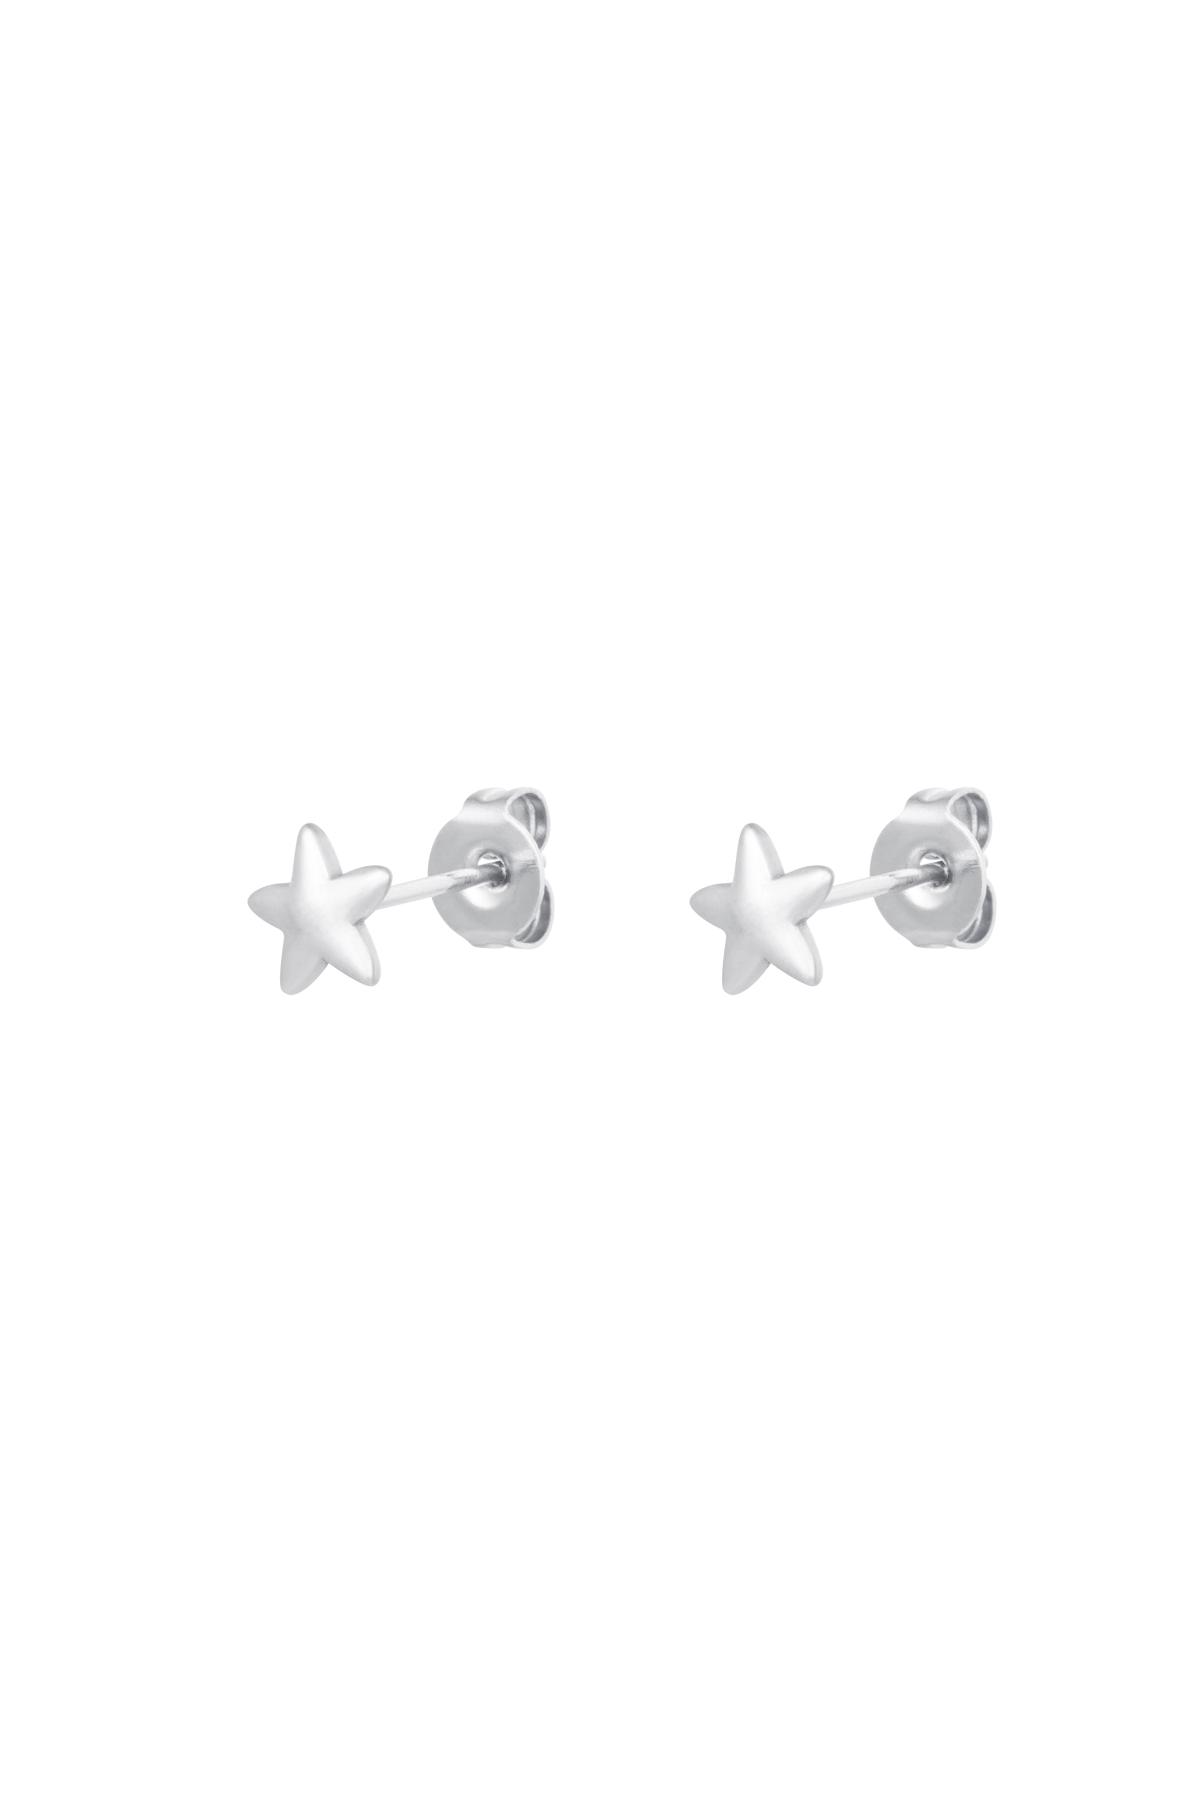 Stud Earrings Star Silver Stainless Steel 